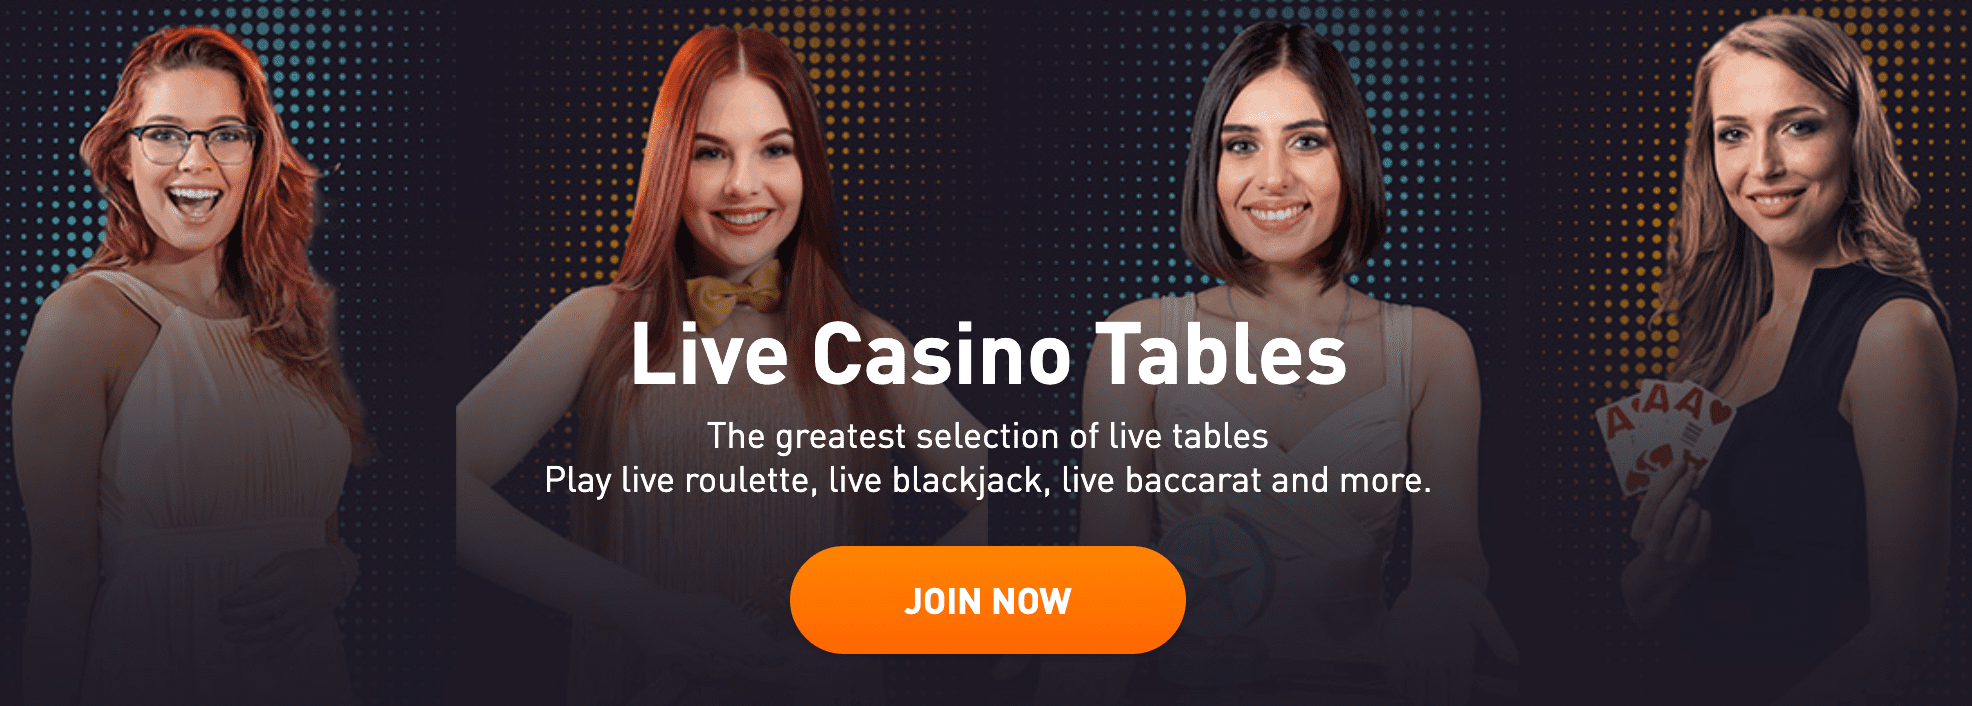 Rocketpot live casino tables